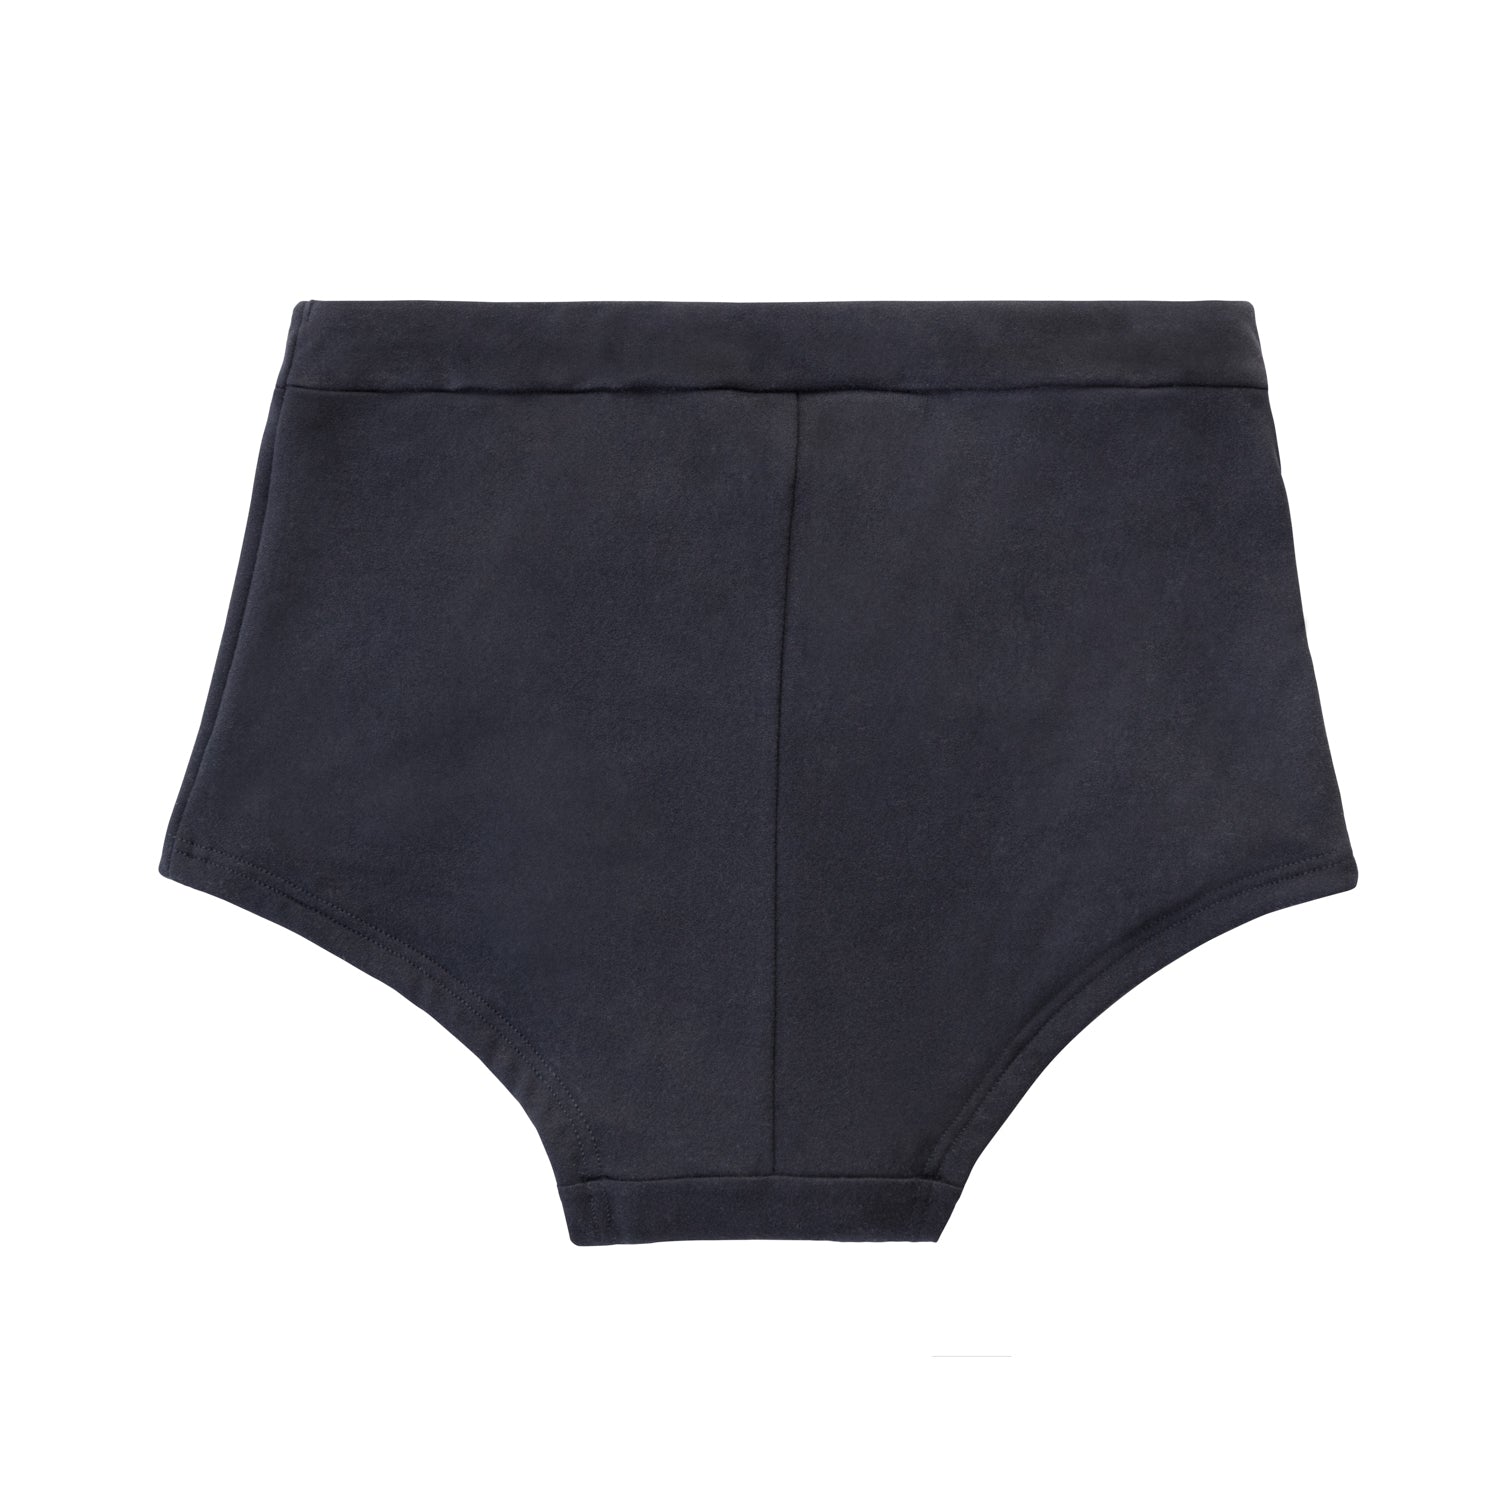 Boy shorts period underwear – Empower La_Vie